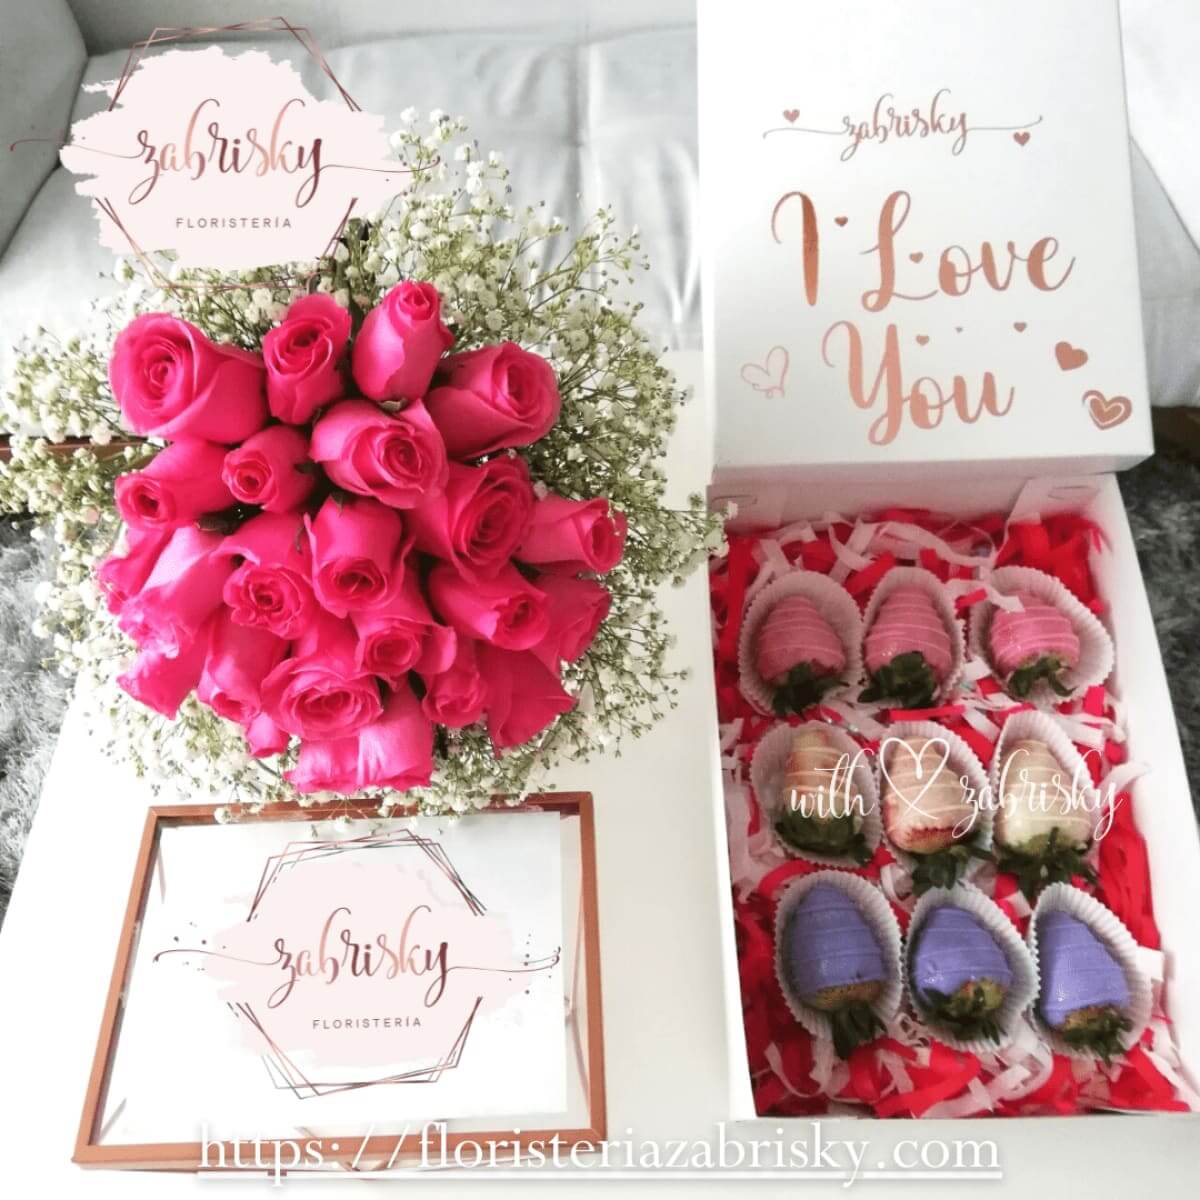 Rosas rosadas y fresas con chocolate - Floristería Zabrisky